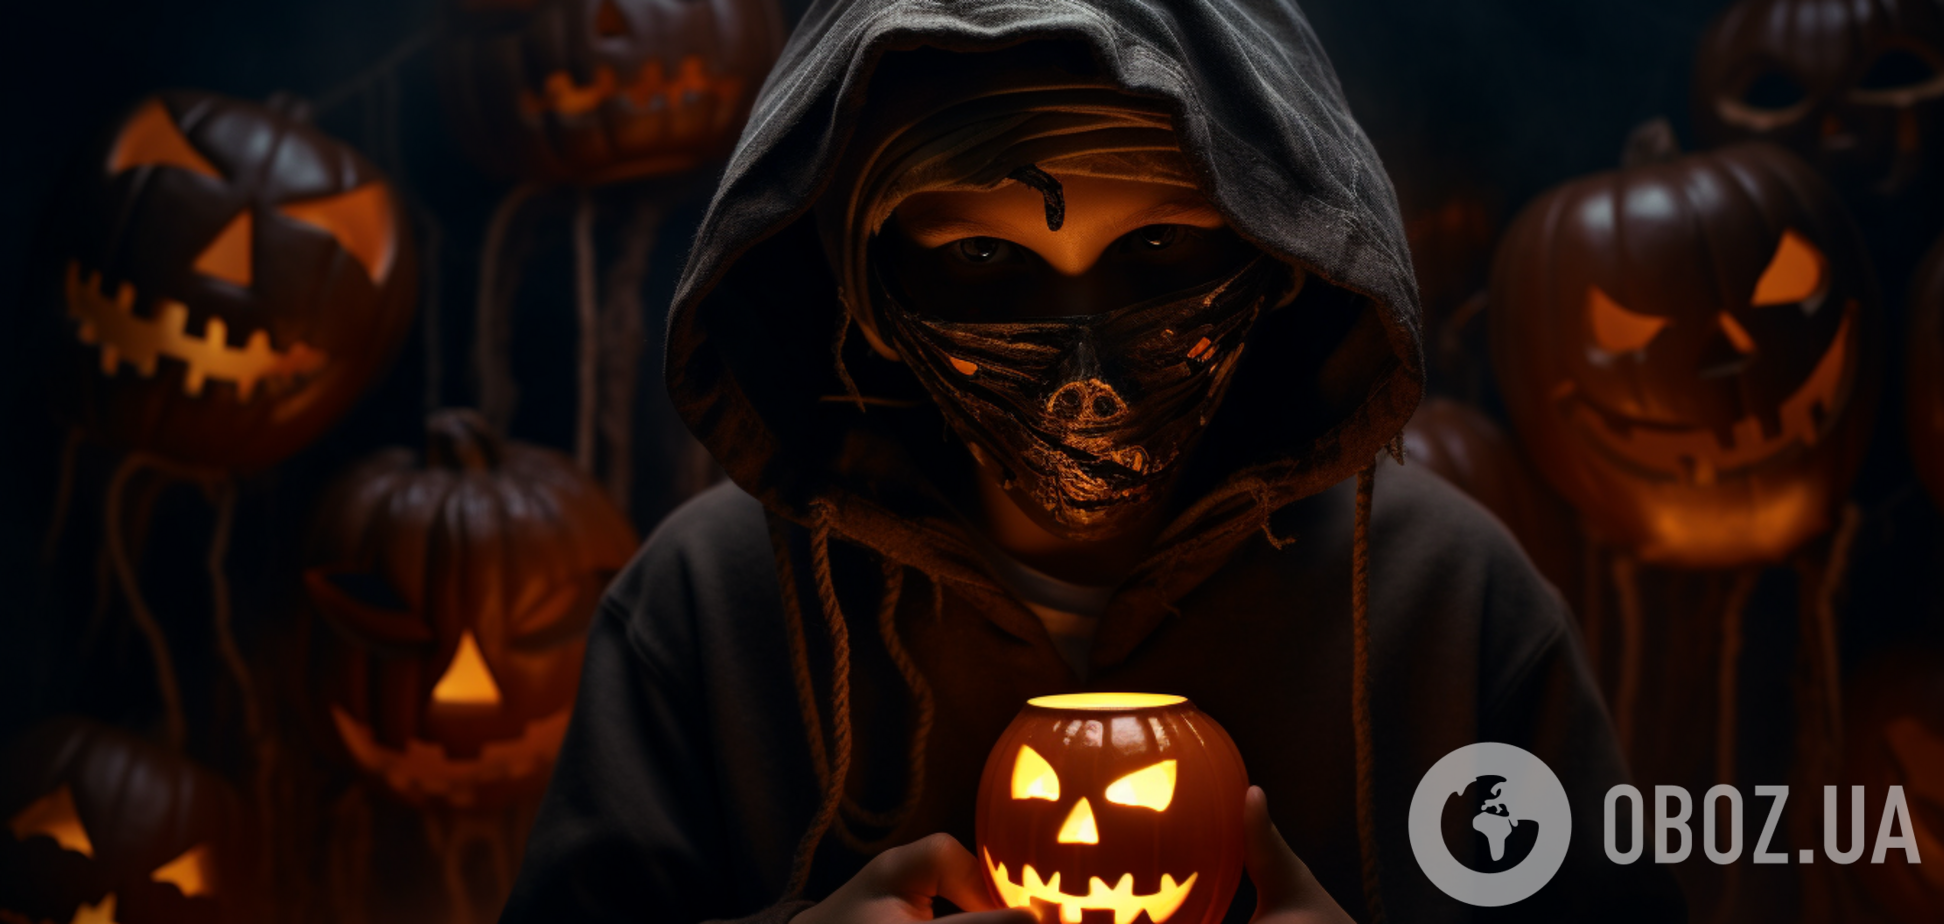 Не просто костюмированная вечеринка и охота на сладости: настоящая тысячелетняя история Хэллоуина